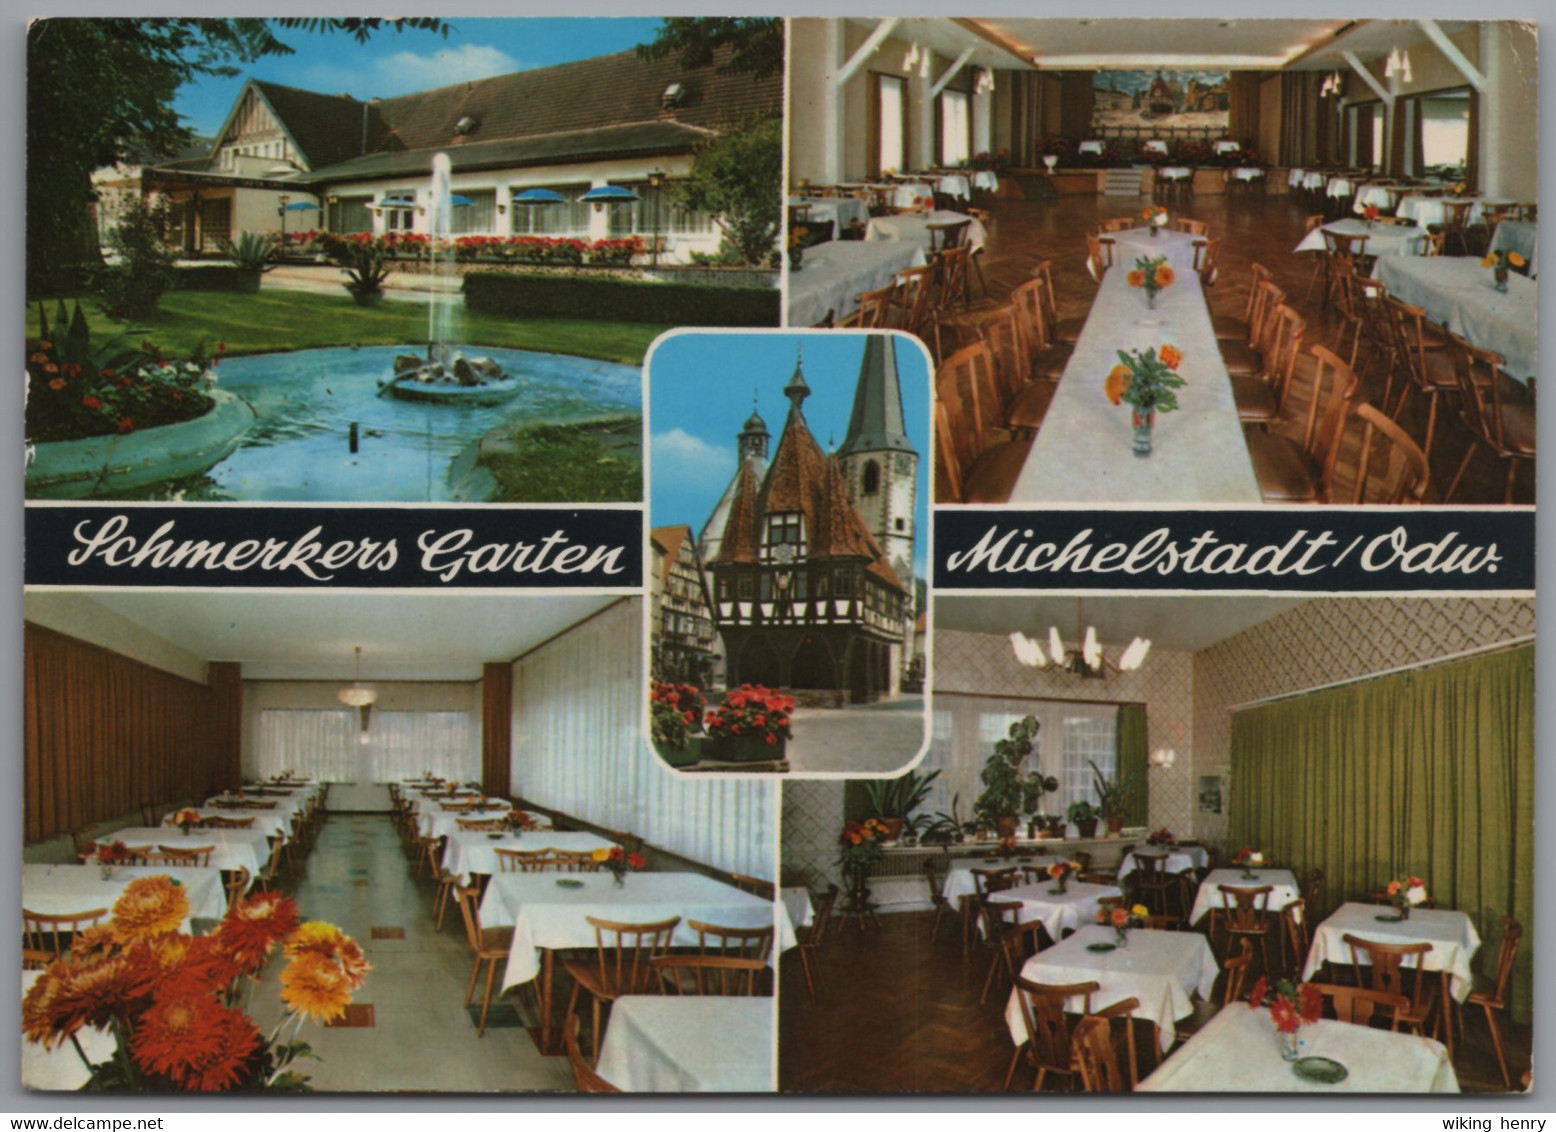 Michelstadt - Restaurant Café Schmerkers Garten - Michelstadt